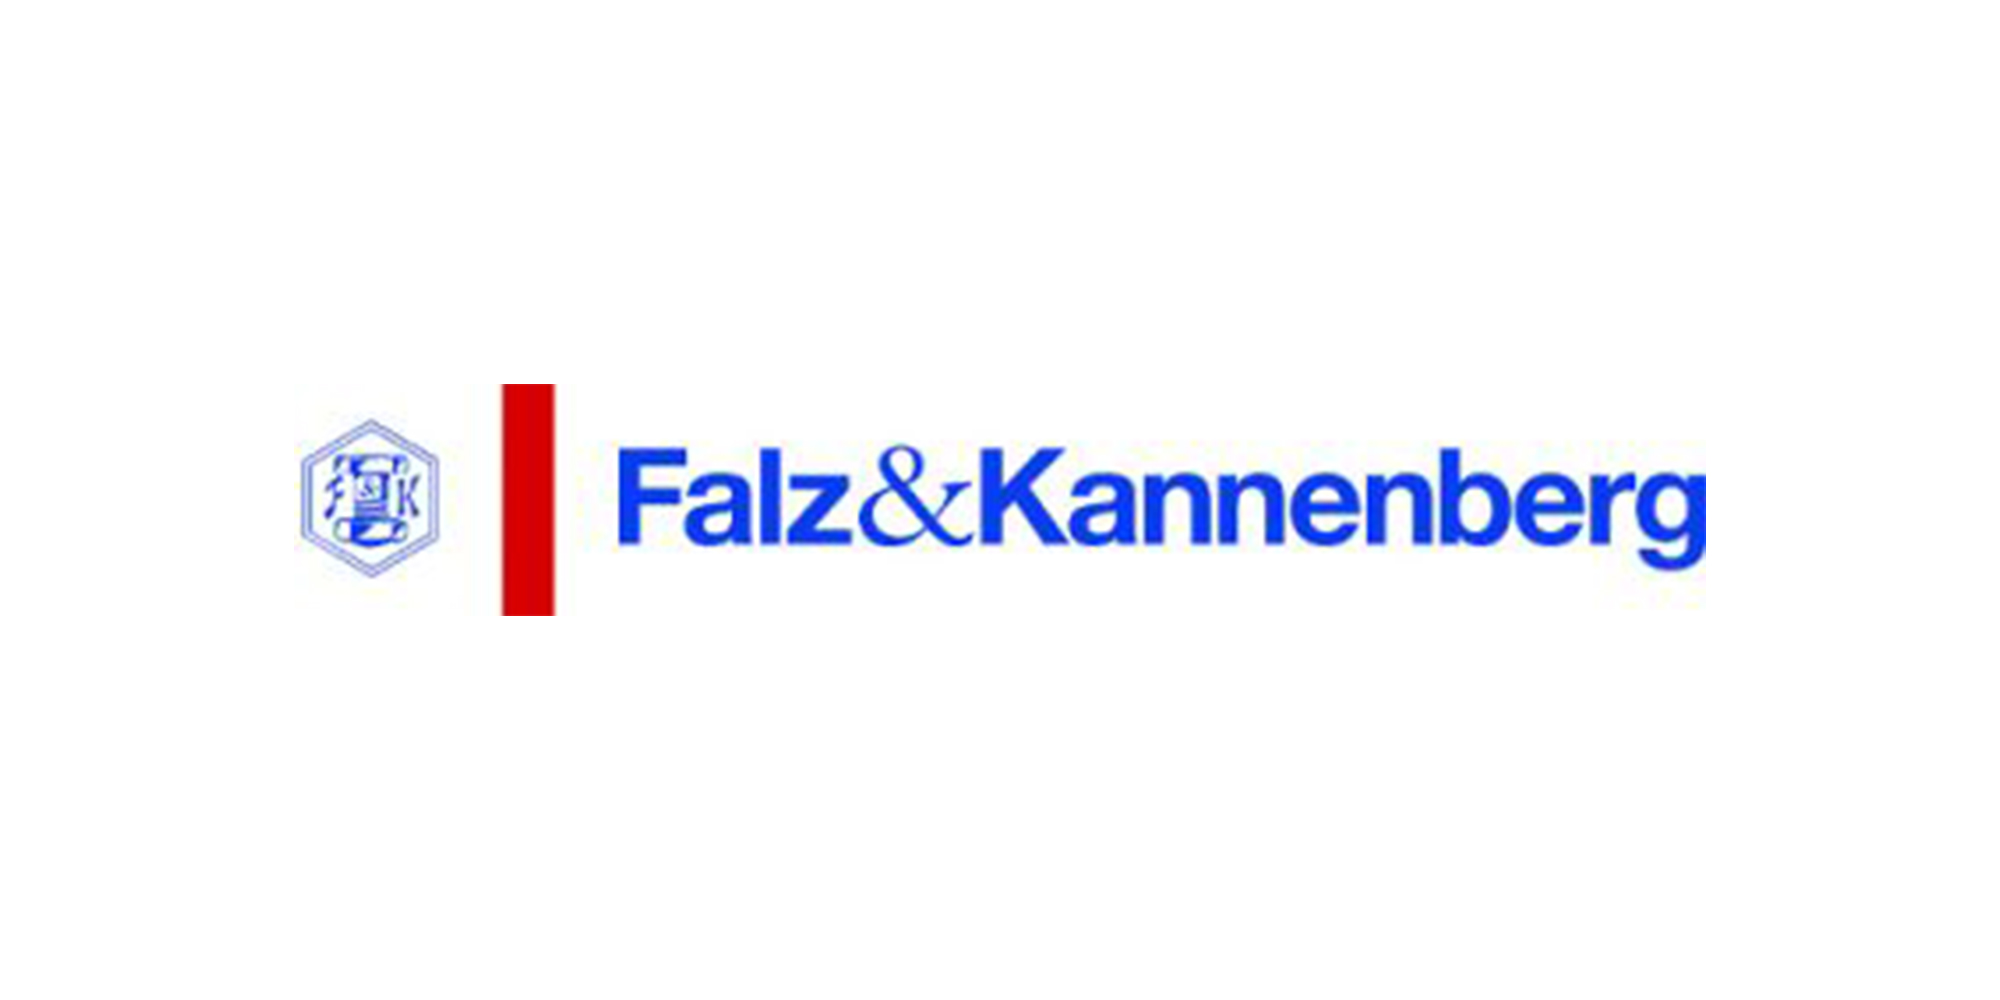 faluundkannenberg_logo